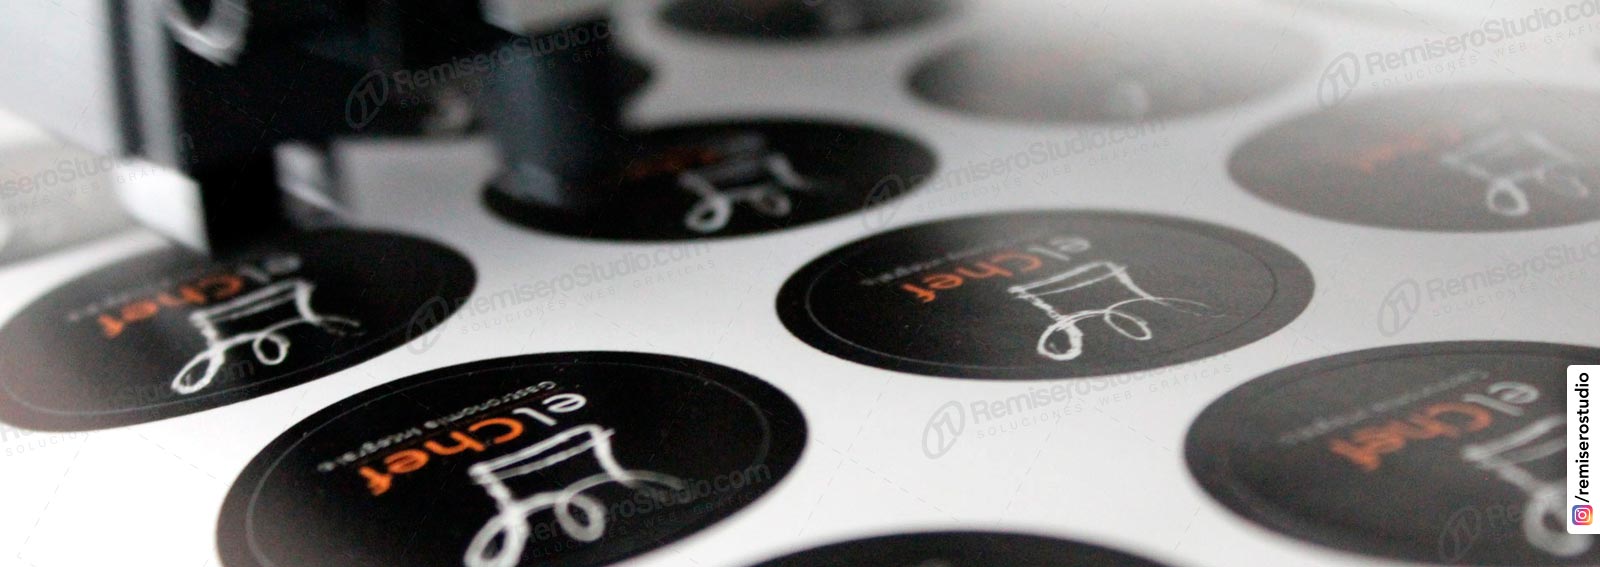 Stickers adhesivos impresos a full color y semi-corte máquina